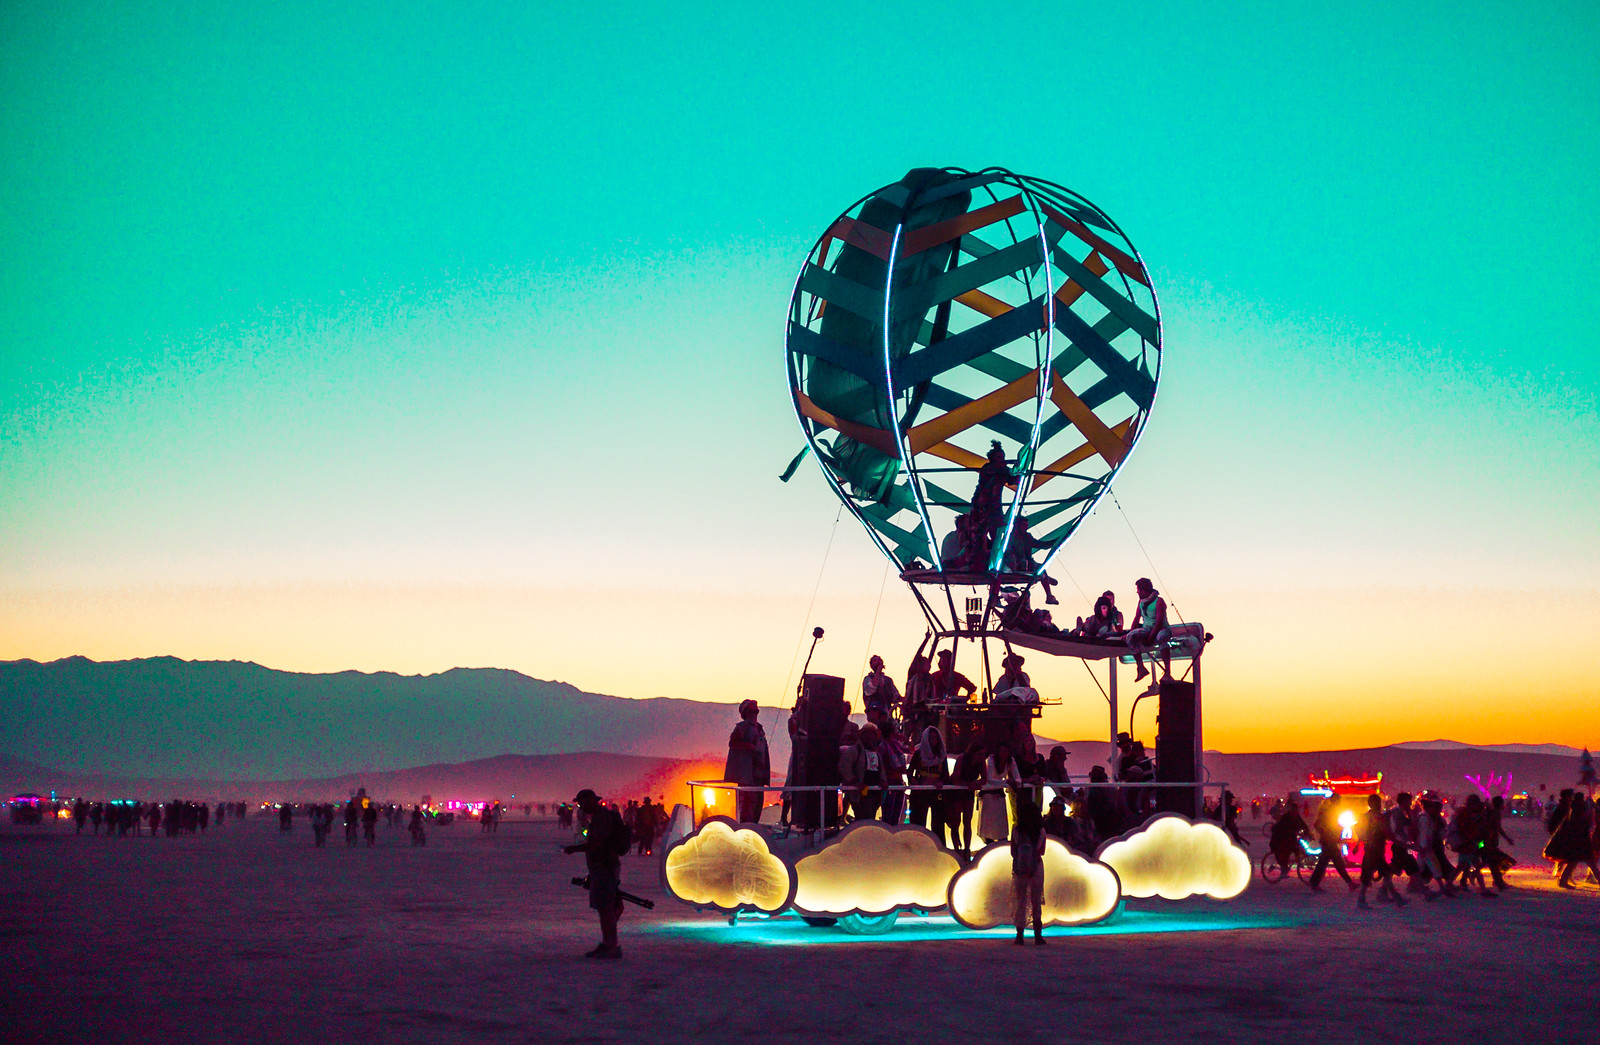 6-Burning Man 2014